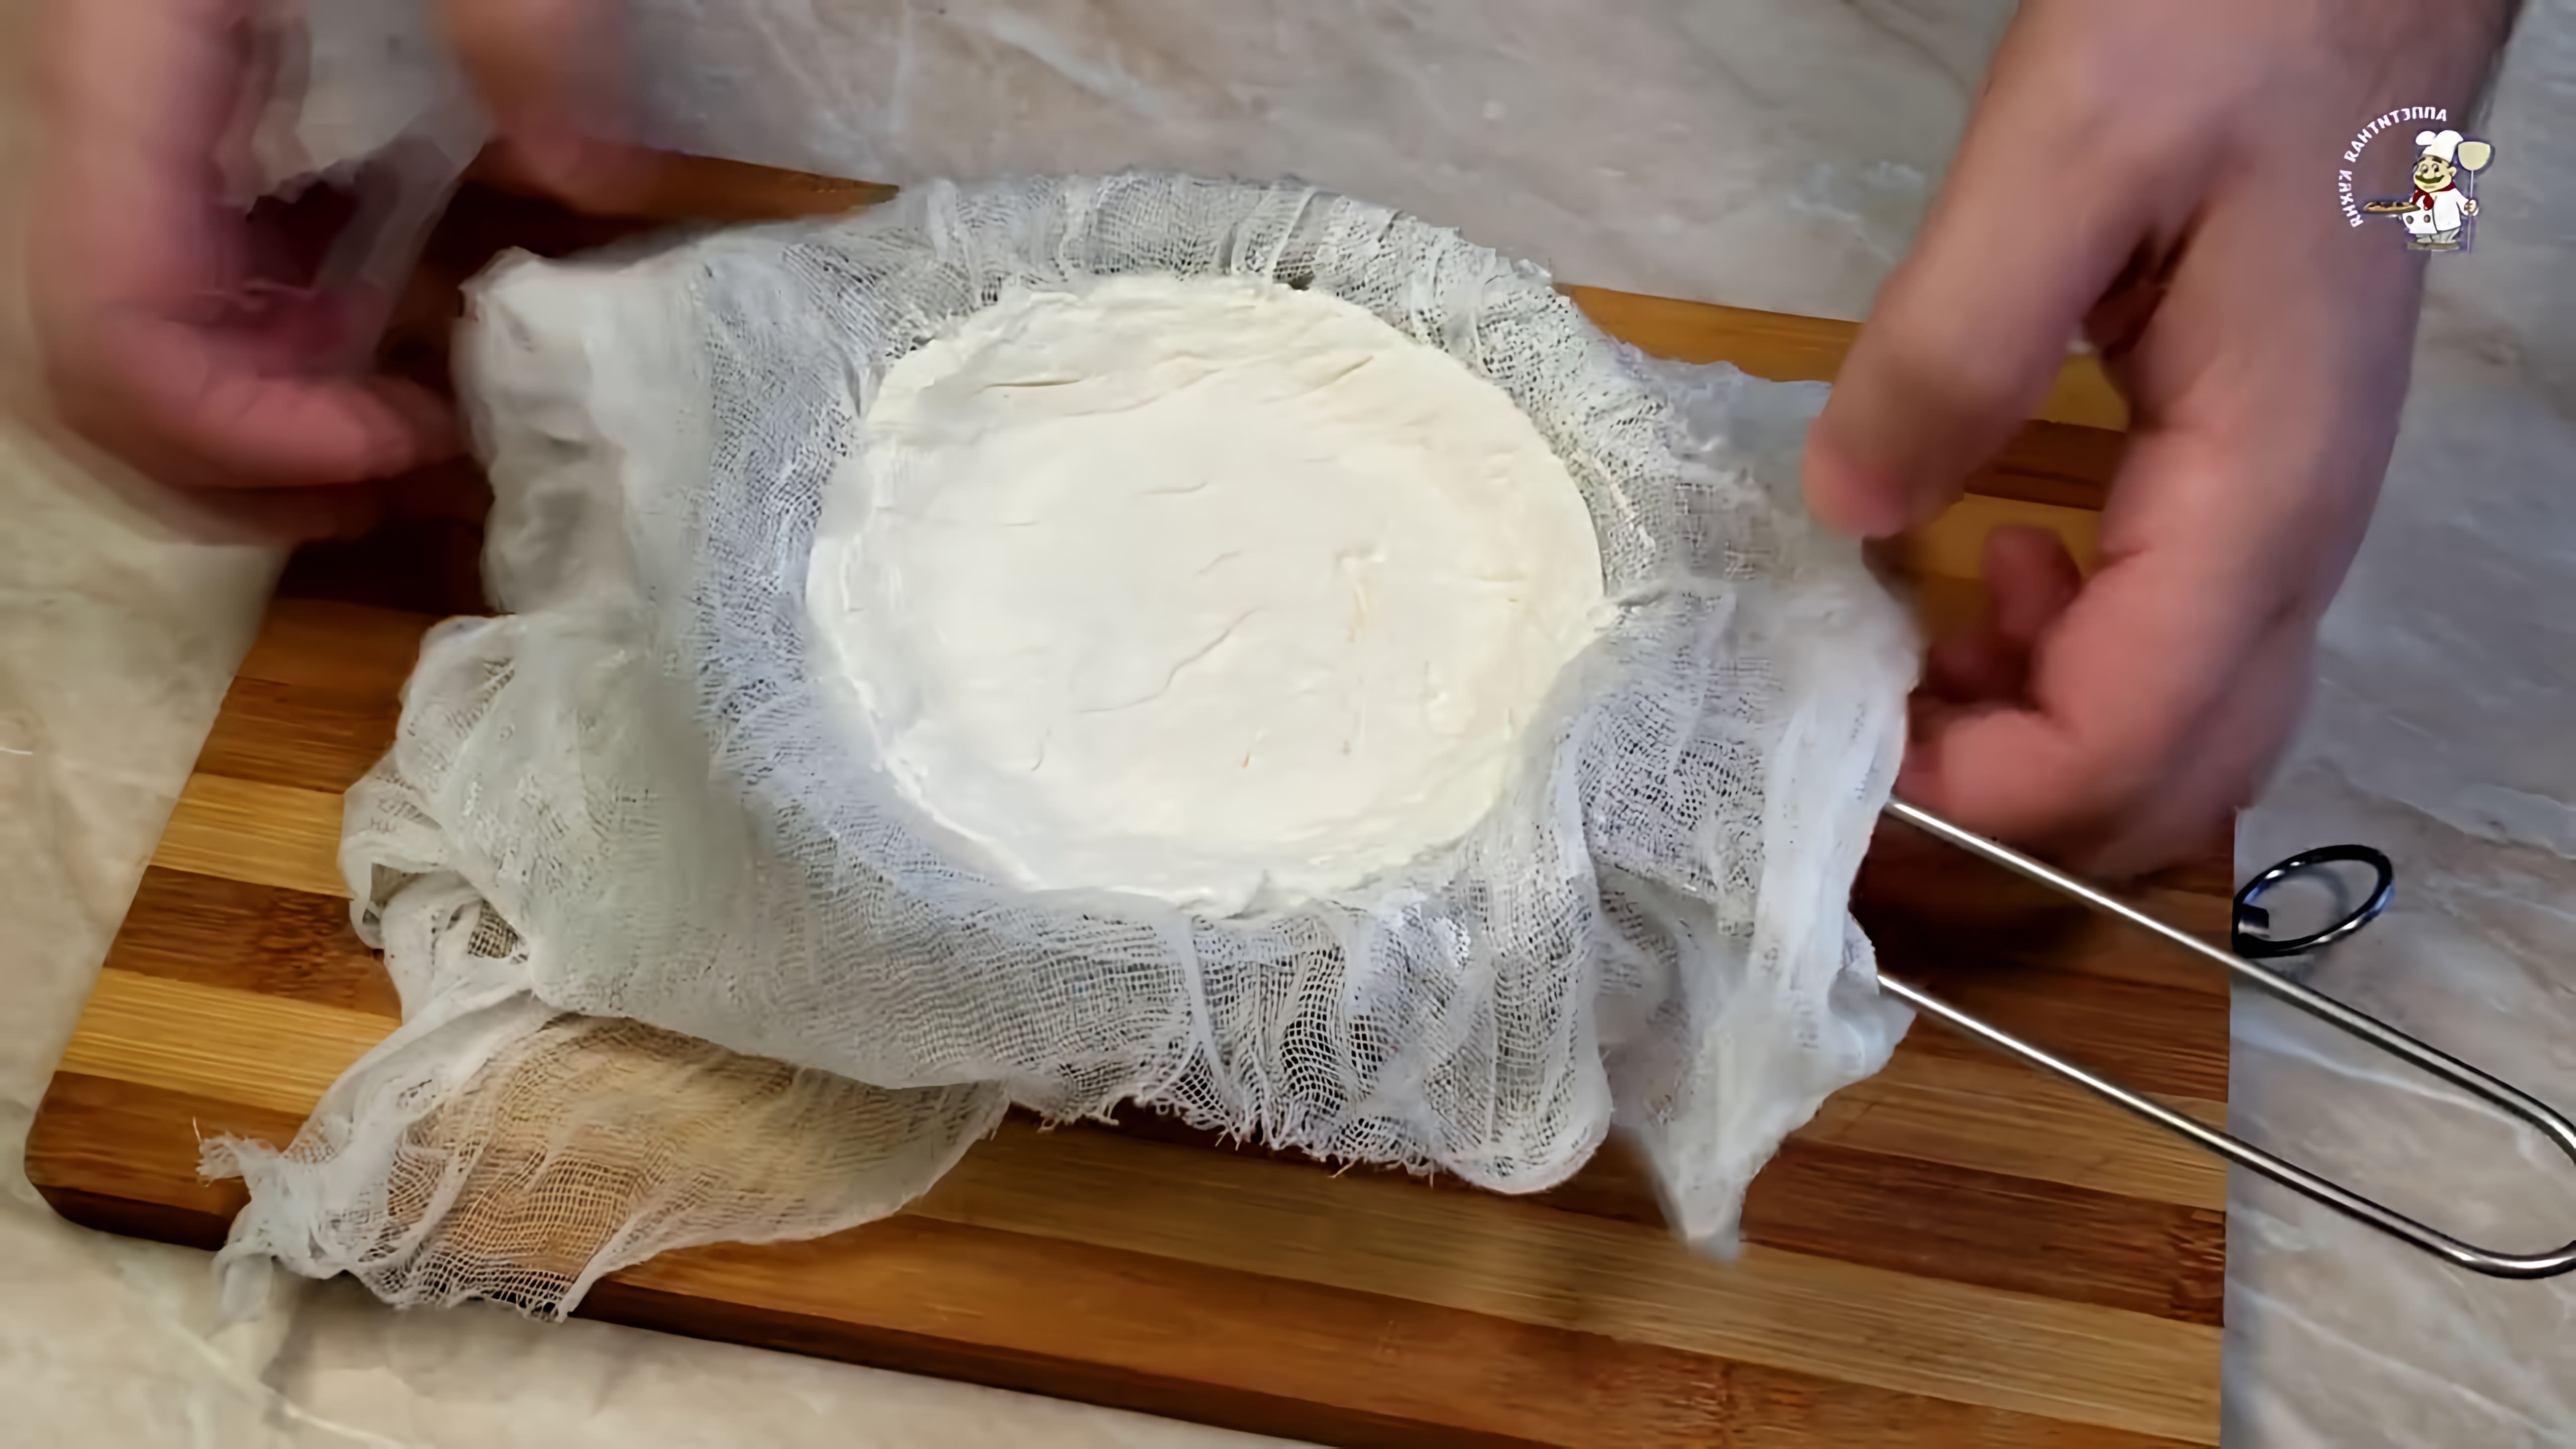 В этом видео демонстрируется процесс приготовления домашнего сыра "Филадельфия" из покупных продуктов